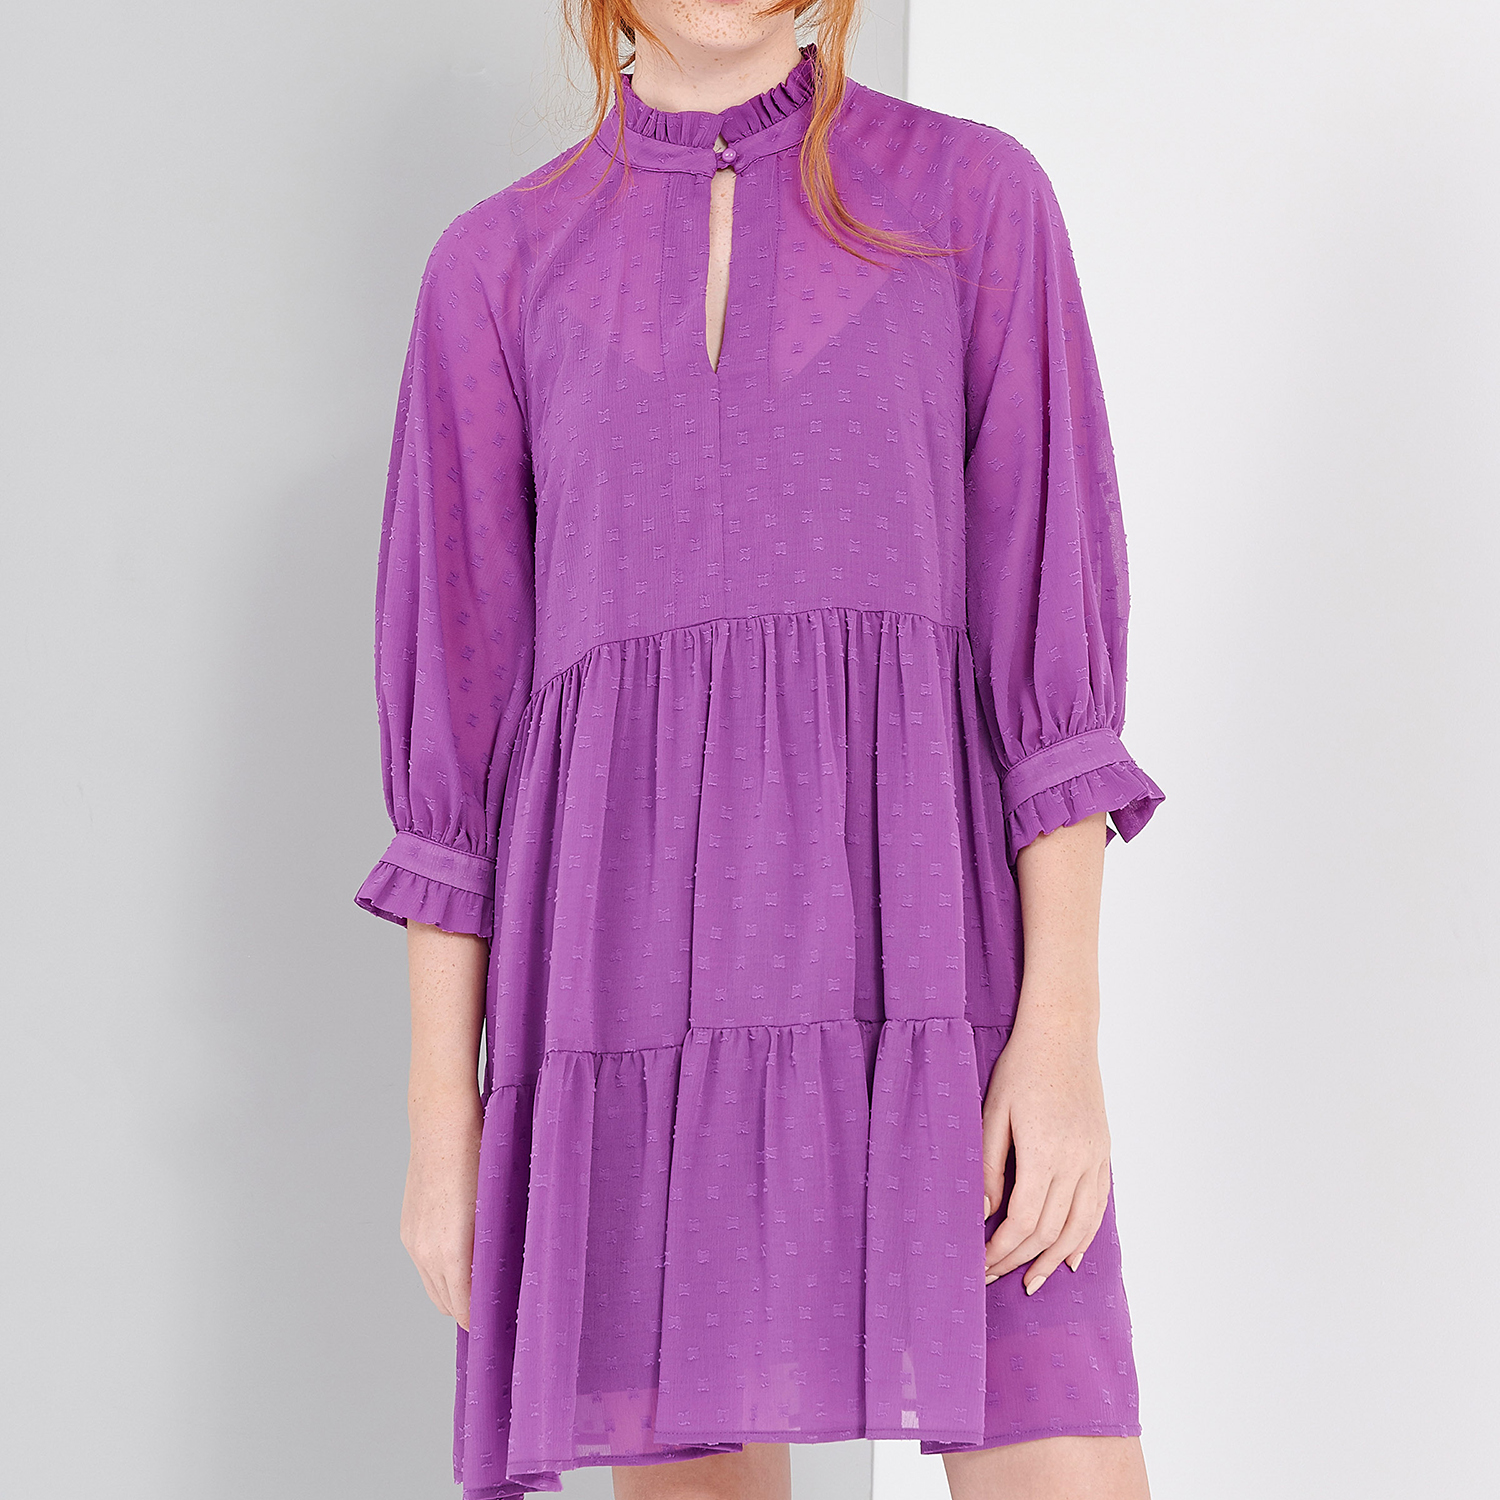 Γυναικεία/Ρούχα/Φορέματα/Μίνι 'ALE - Γυναικείο mini φόρεμα 'ALE μοβ